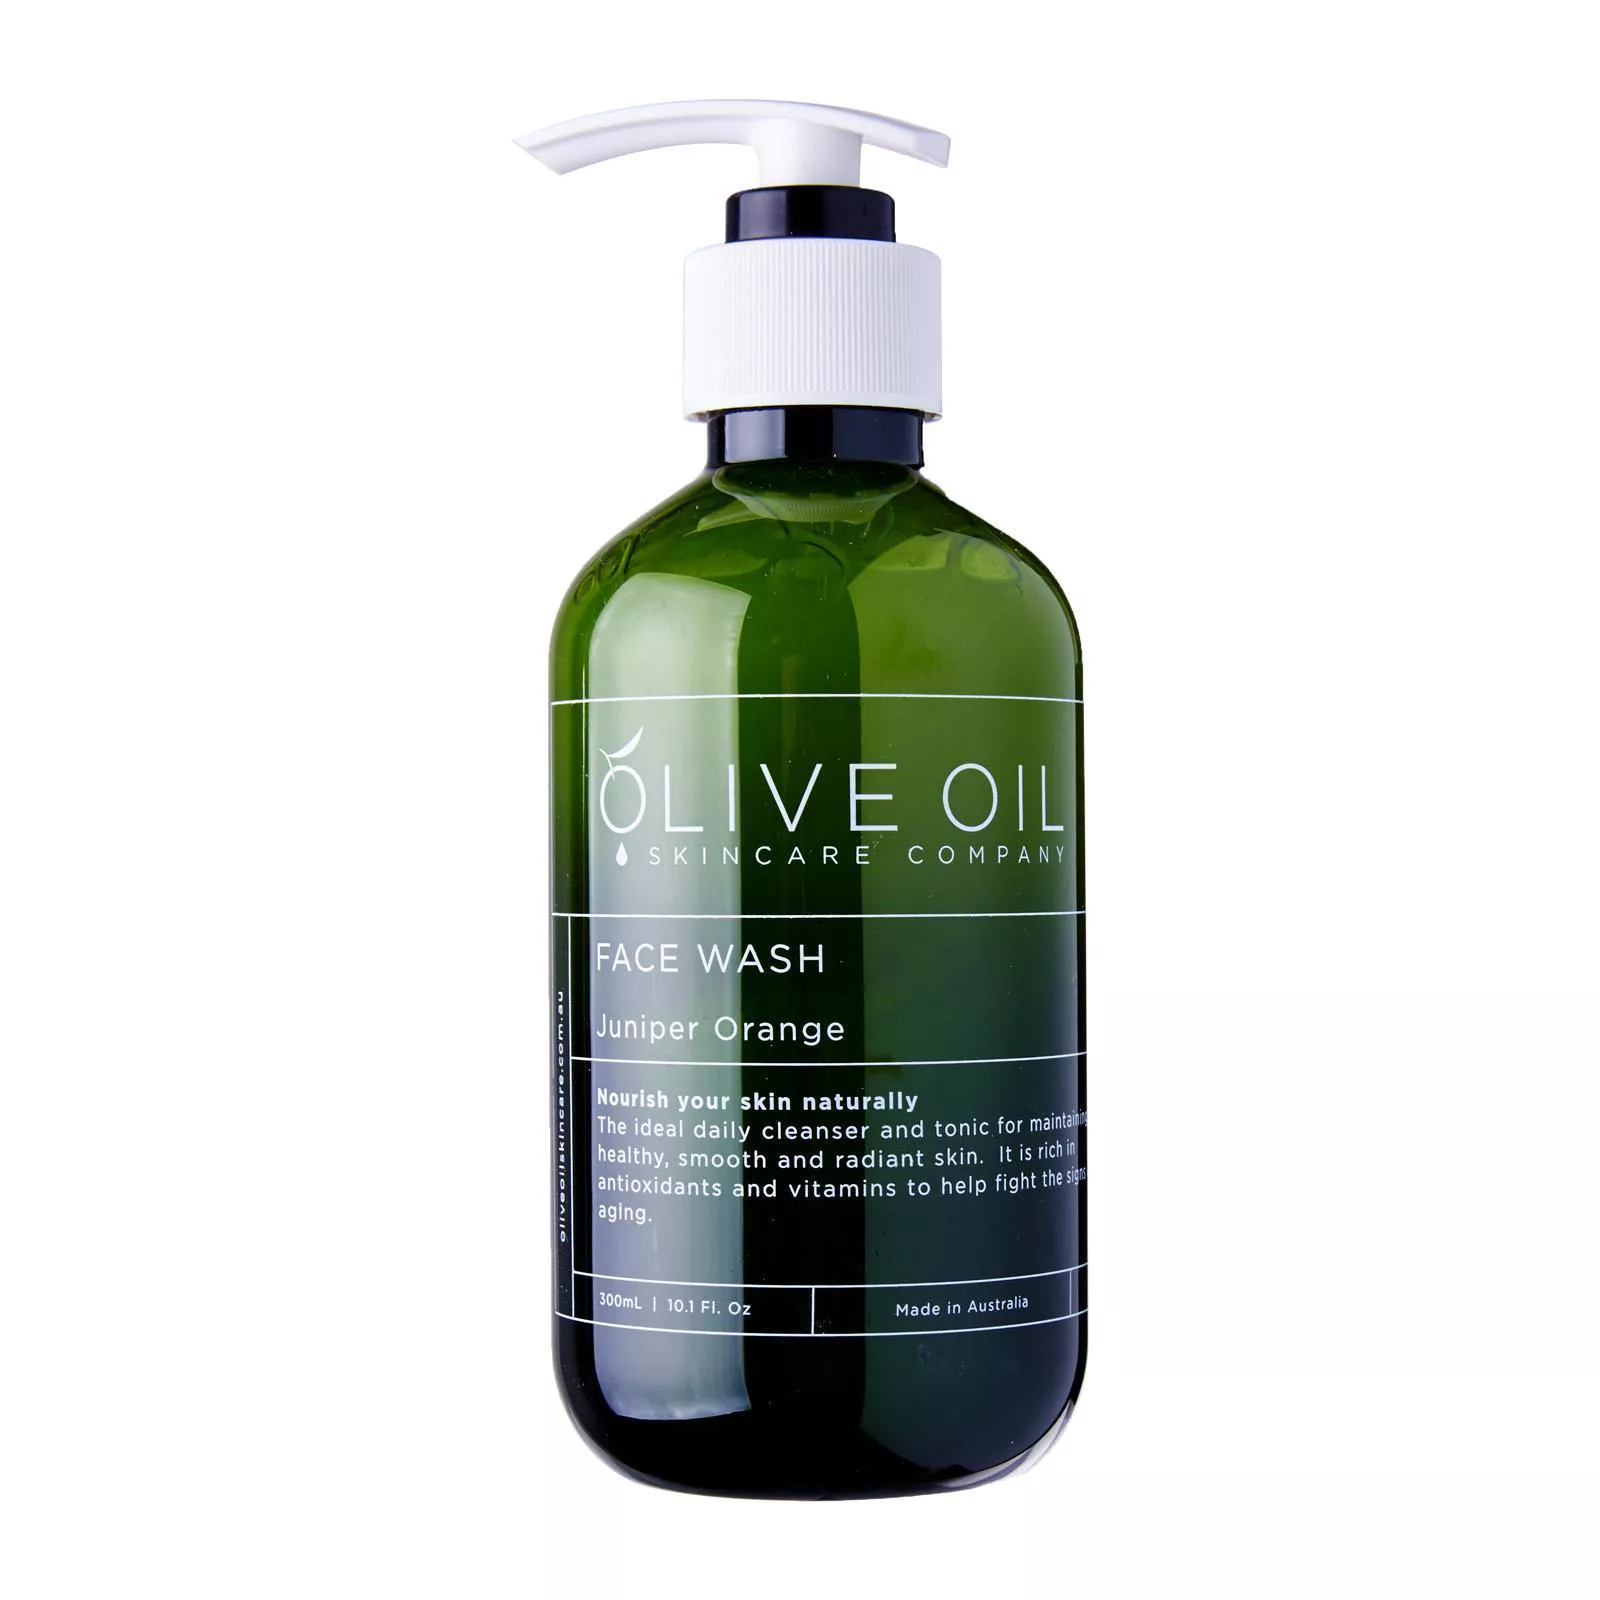 Olive Oil Skincare Company Face Wash